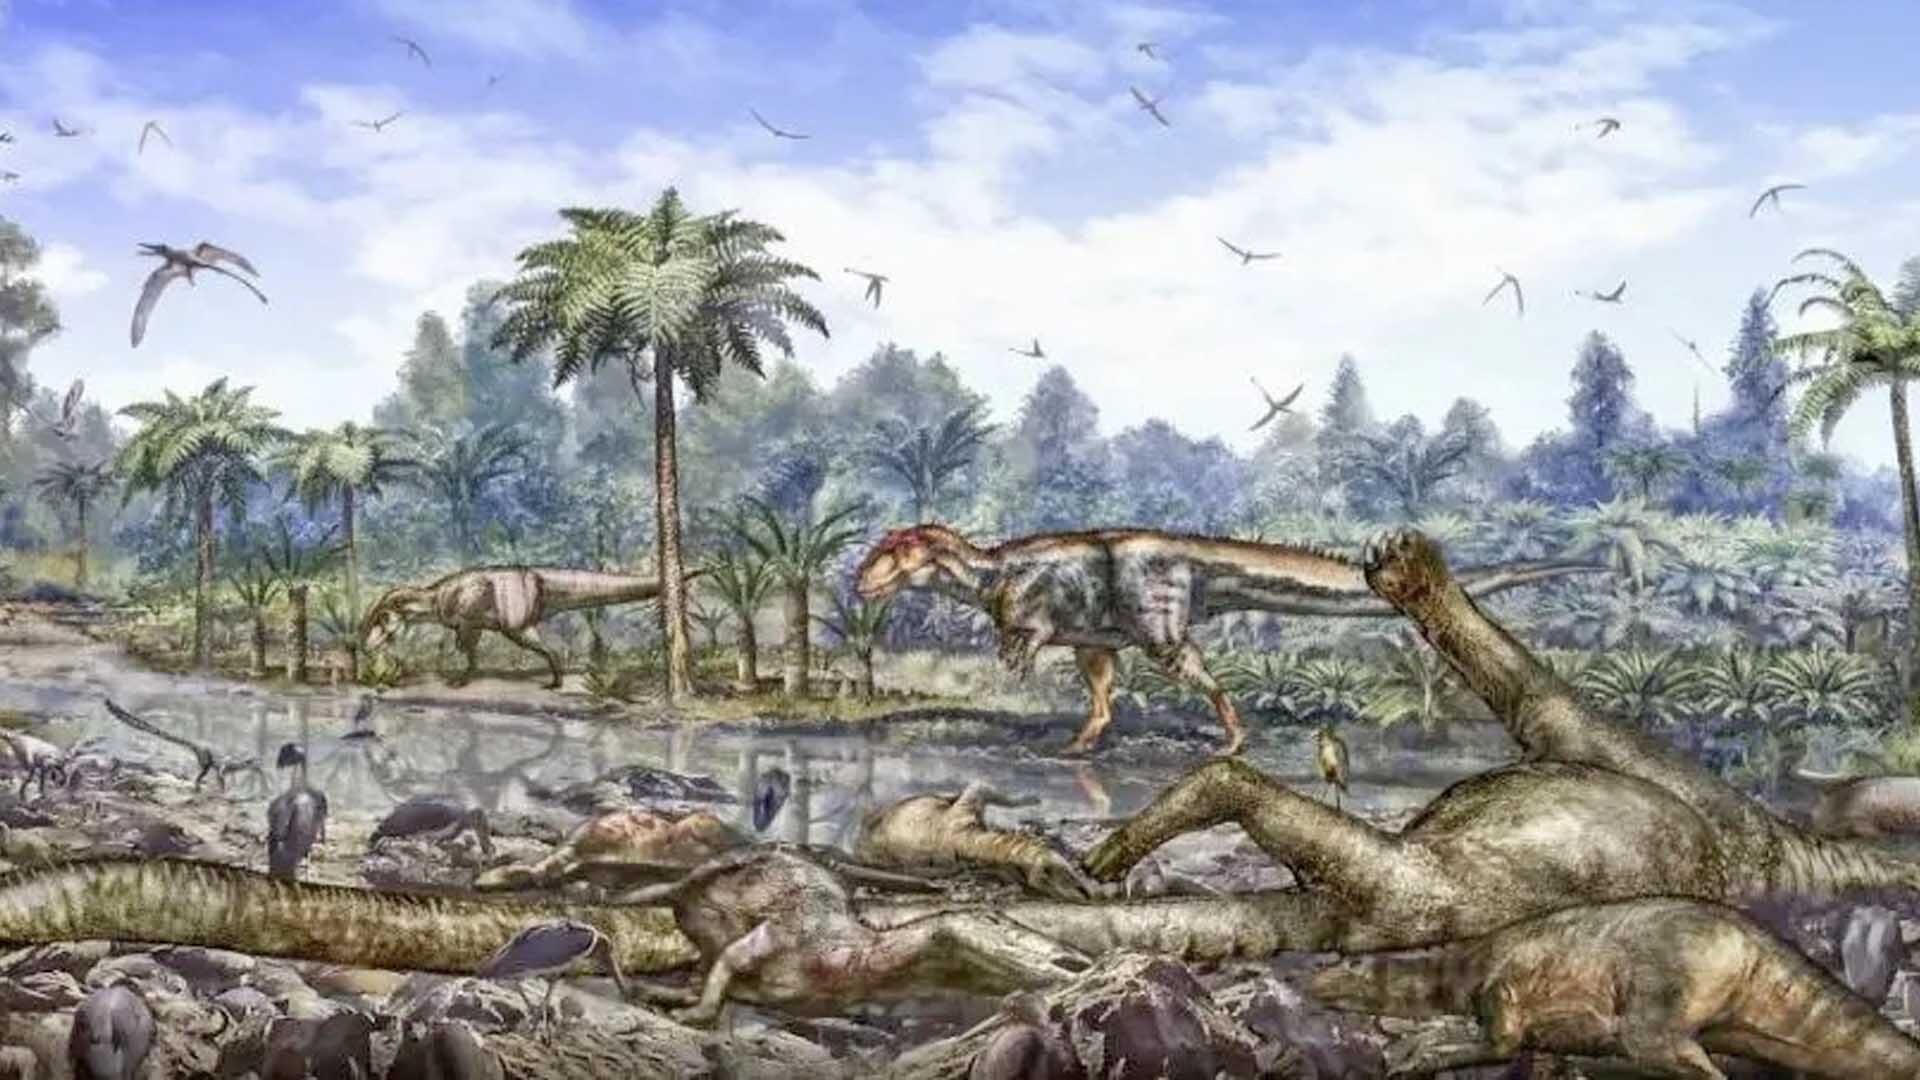 พบฟอสซิลสัตว์เลื้อยคลาน “ไตรเทอโลดอน” ในจีน ตะลึงฟัน 3 แถว อายุ 170 ล้านปี